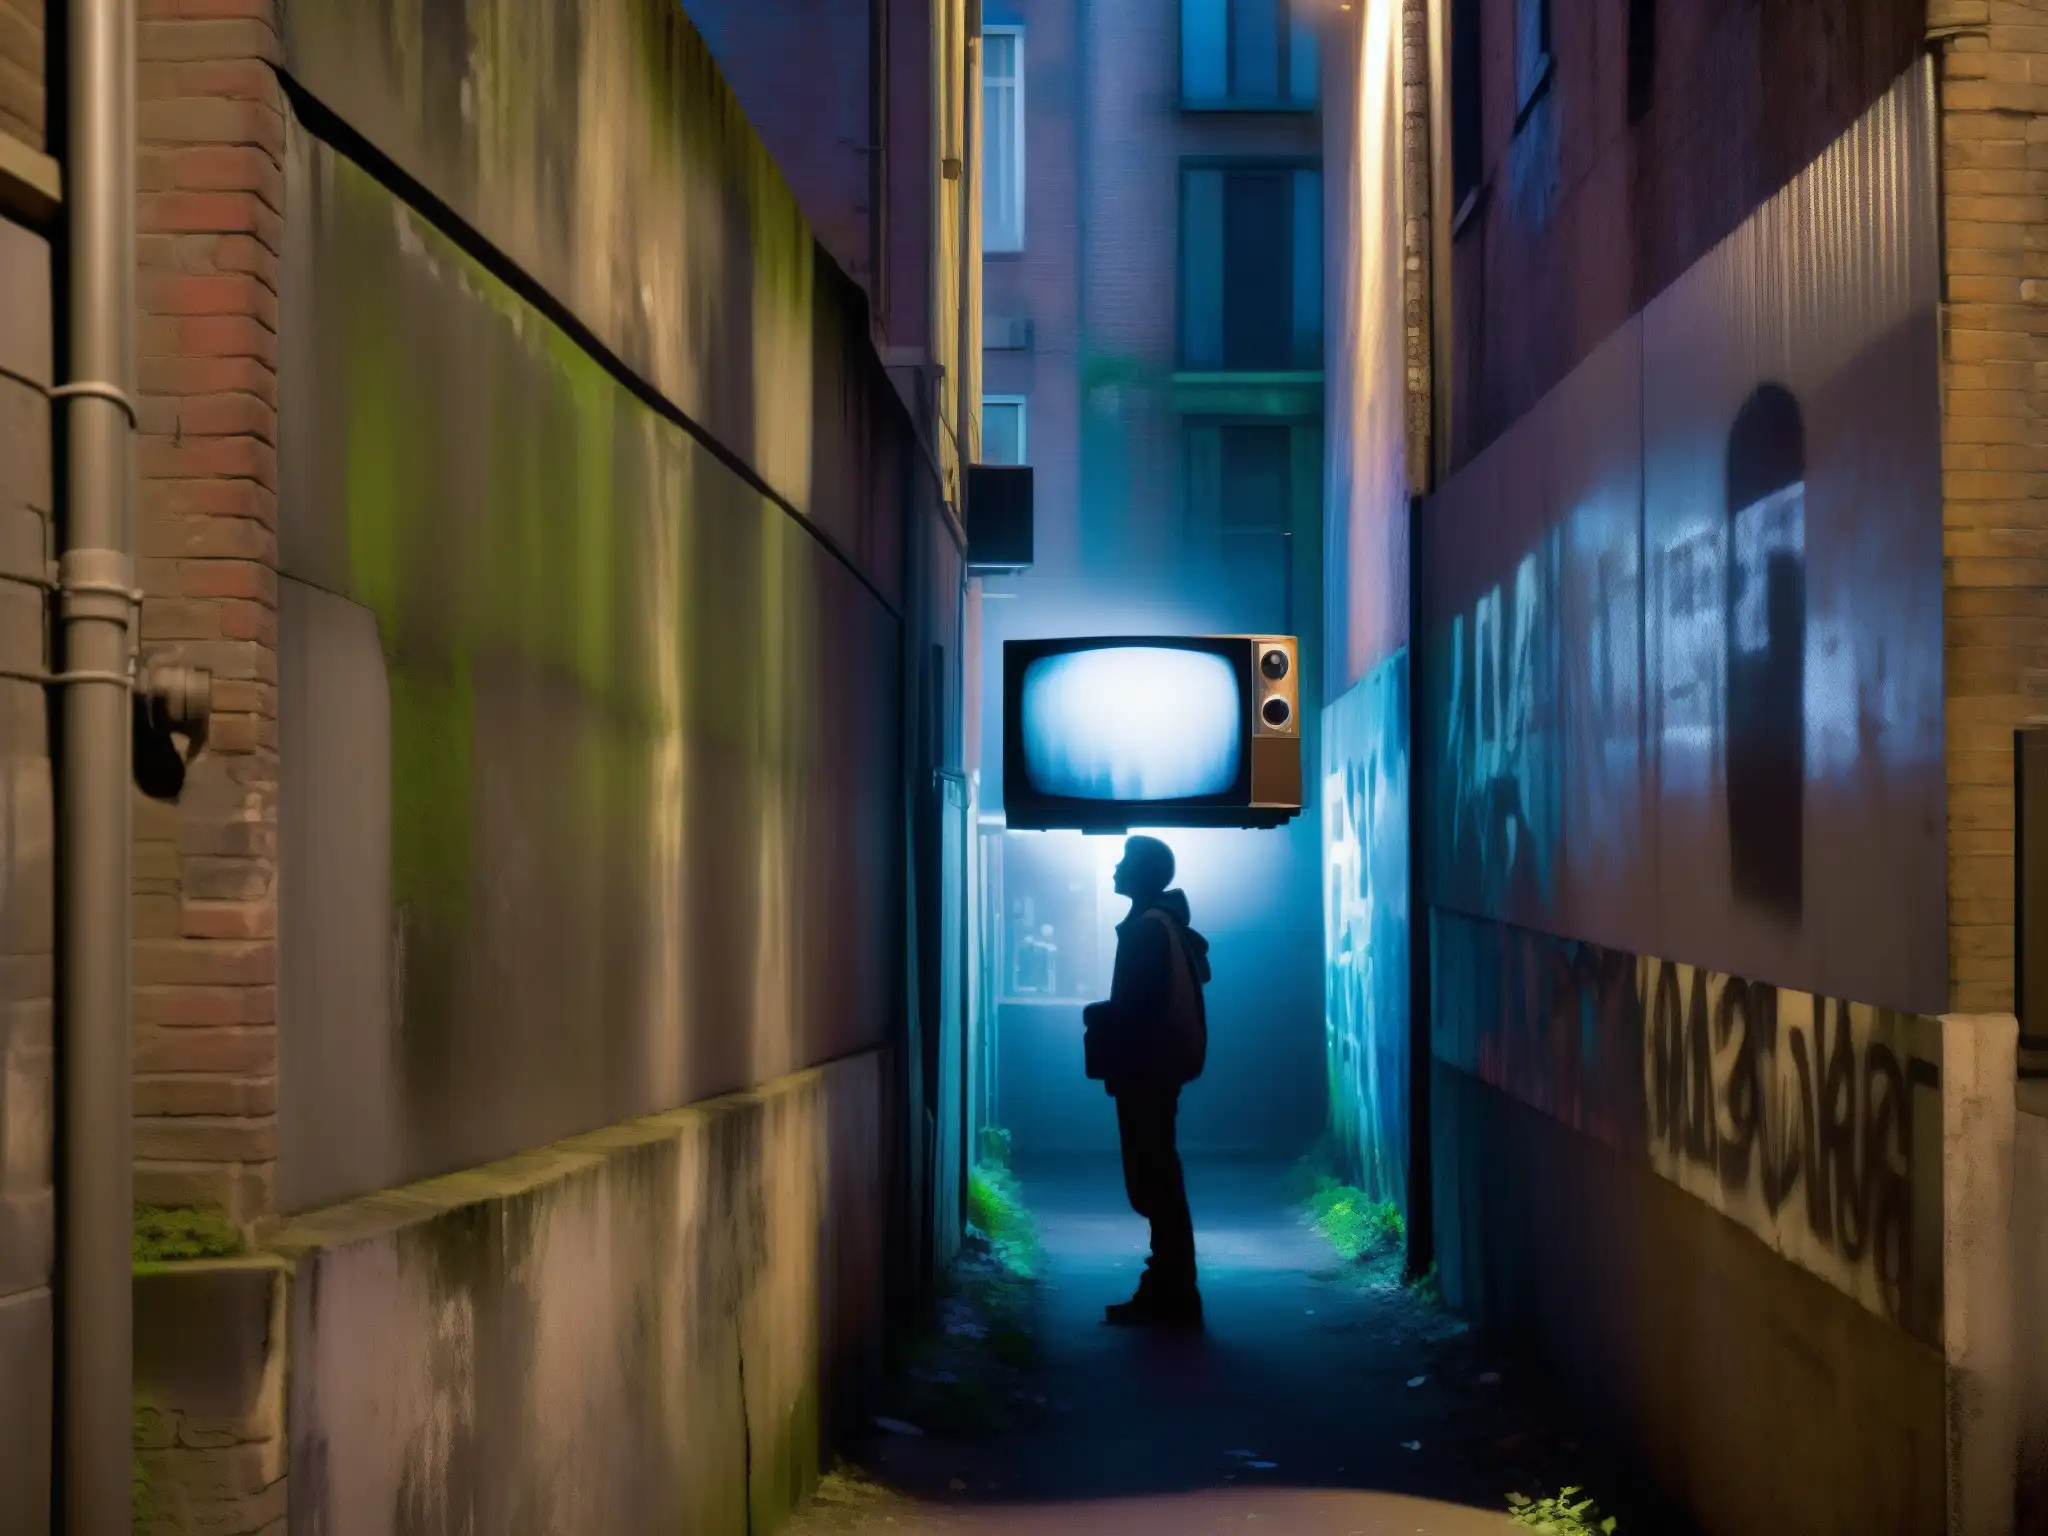 En la penumbra de un callejón, el brillo tenue de una TV vintage ilumina a una figura misteriosa, evocando el origen de leyendas urbanas series TV